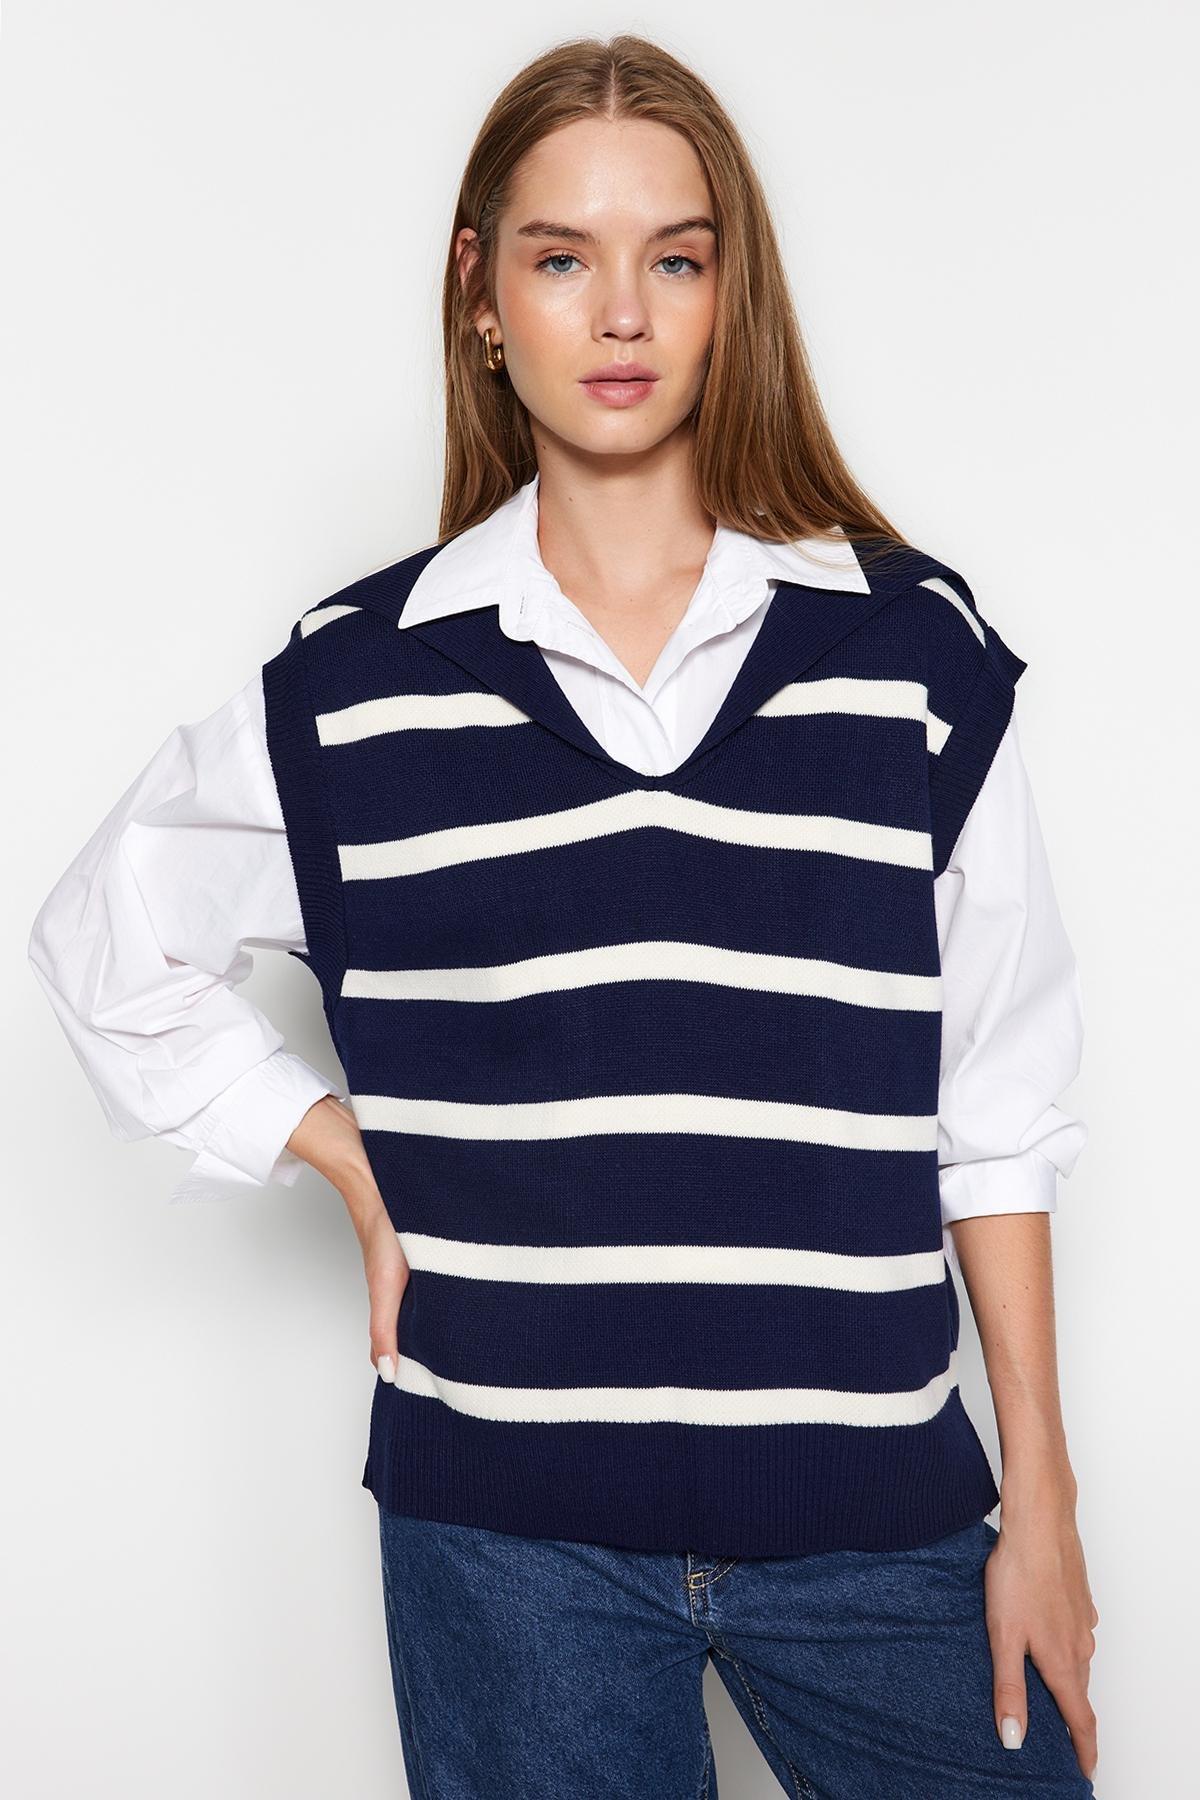 Trendyol - Navy Striped Collar Knitwear Sweater